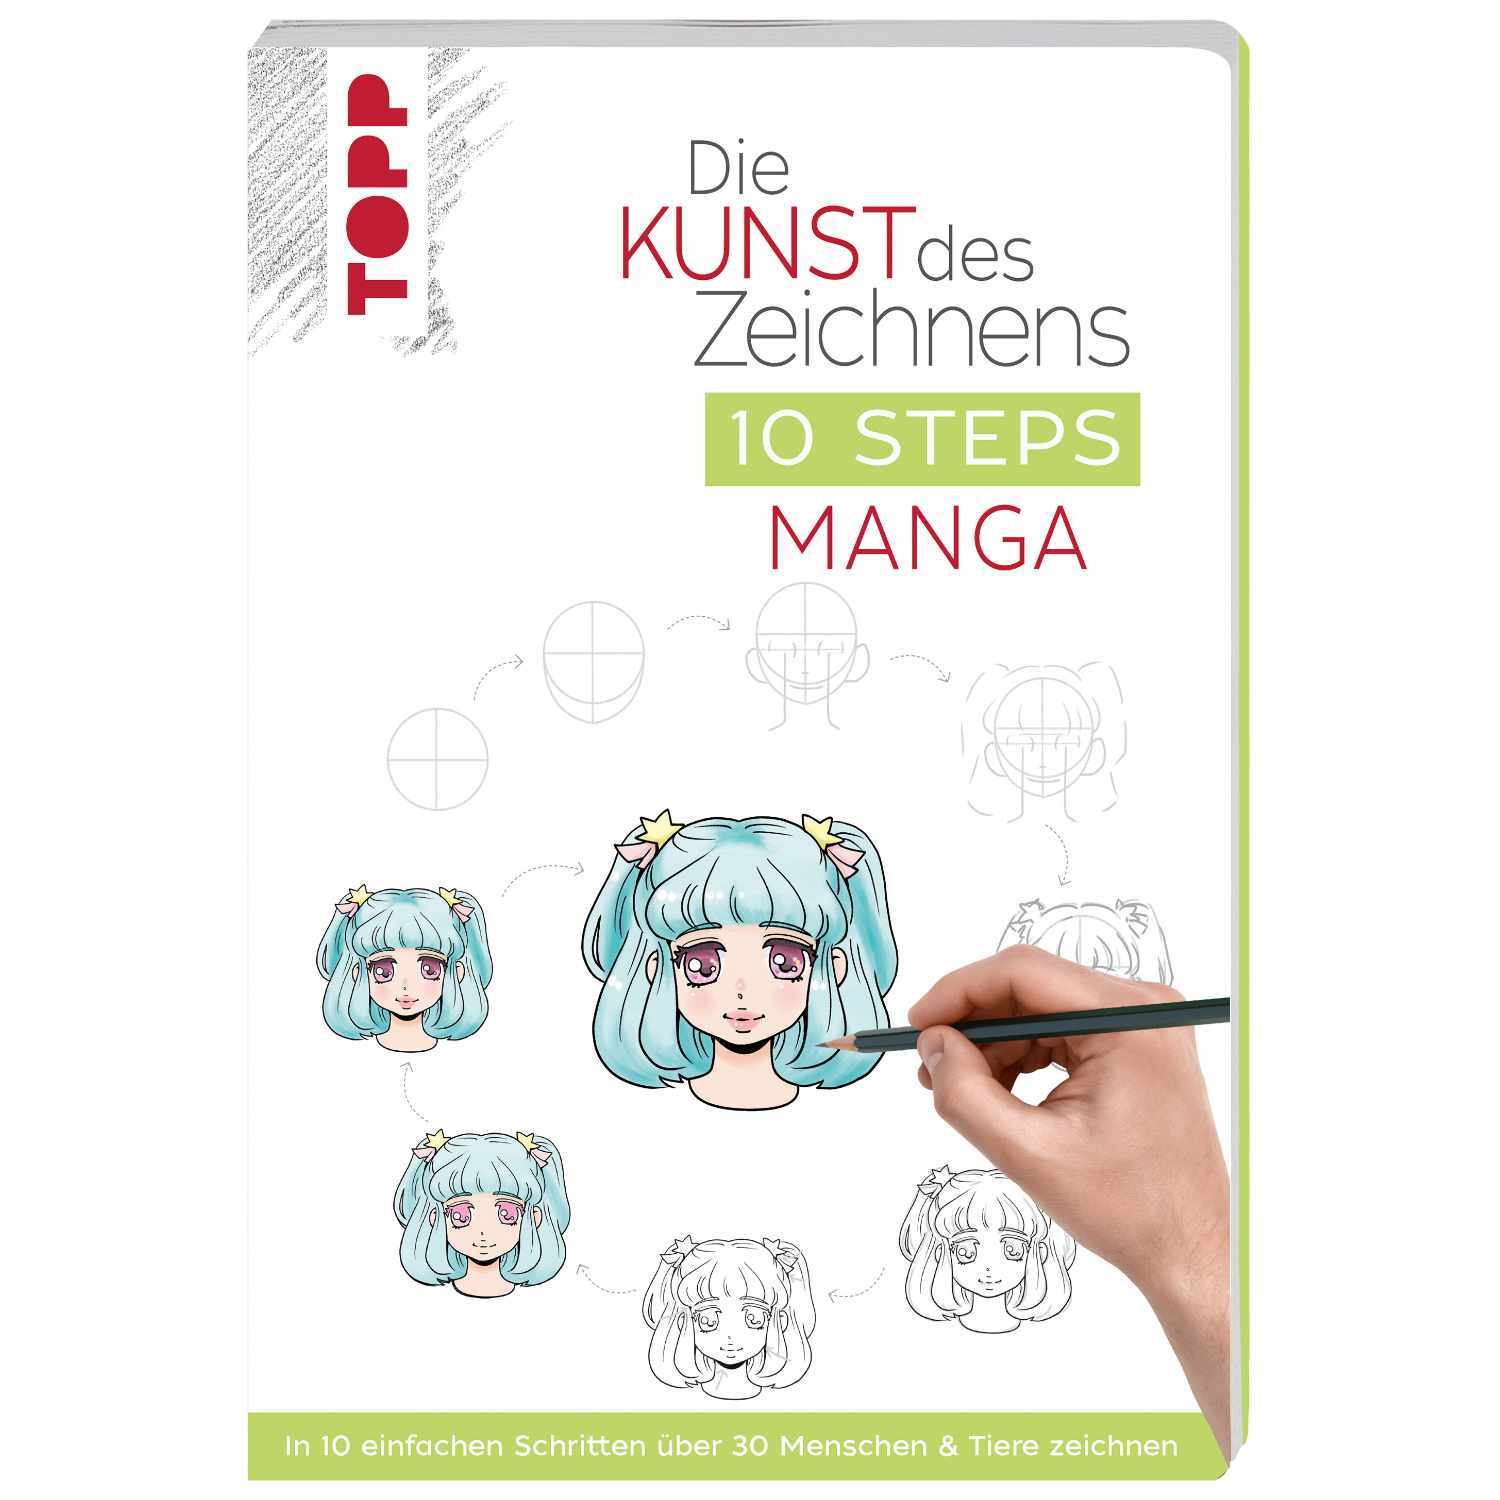 Die Kunst des Zeichnens 10 Steps - Manga